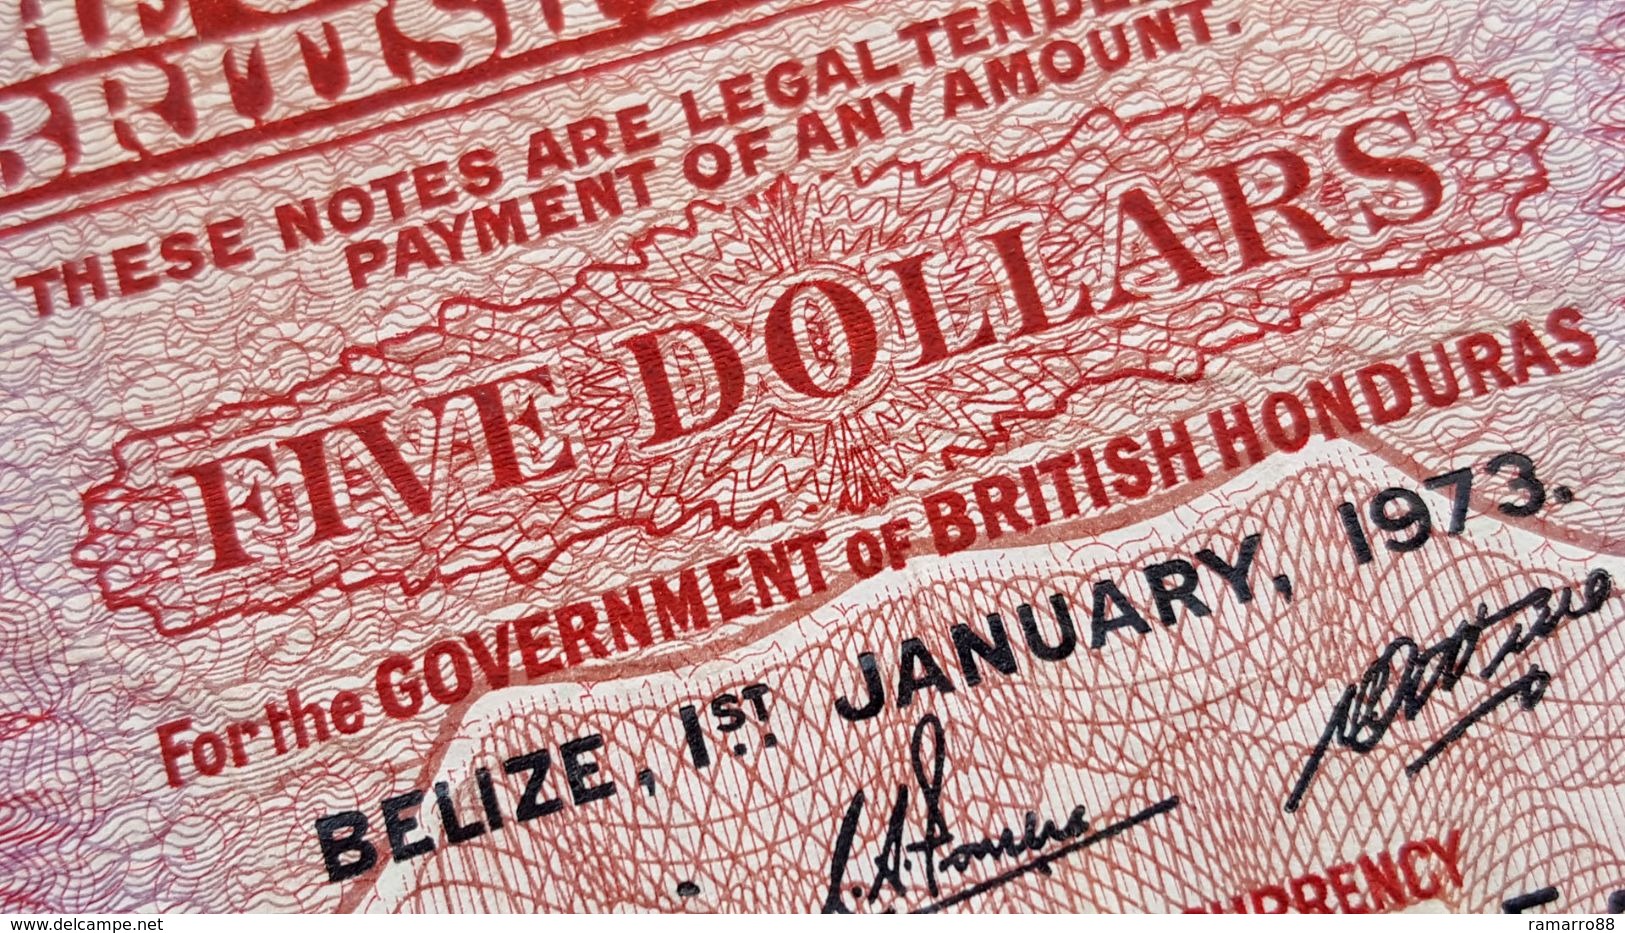 British Honduras / Belize 5 $ Dollars 1973 Queen Elizabeth II Pick 30c F+